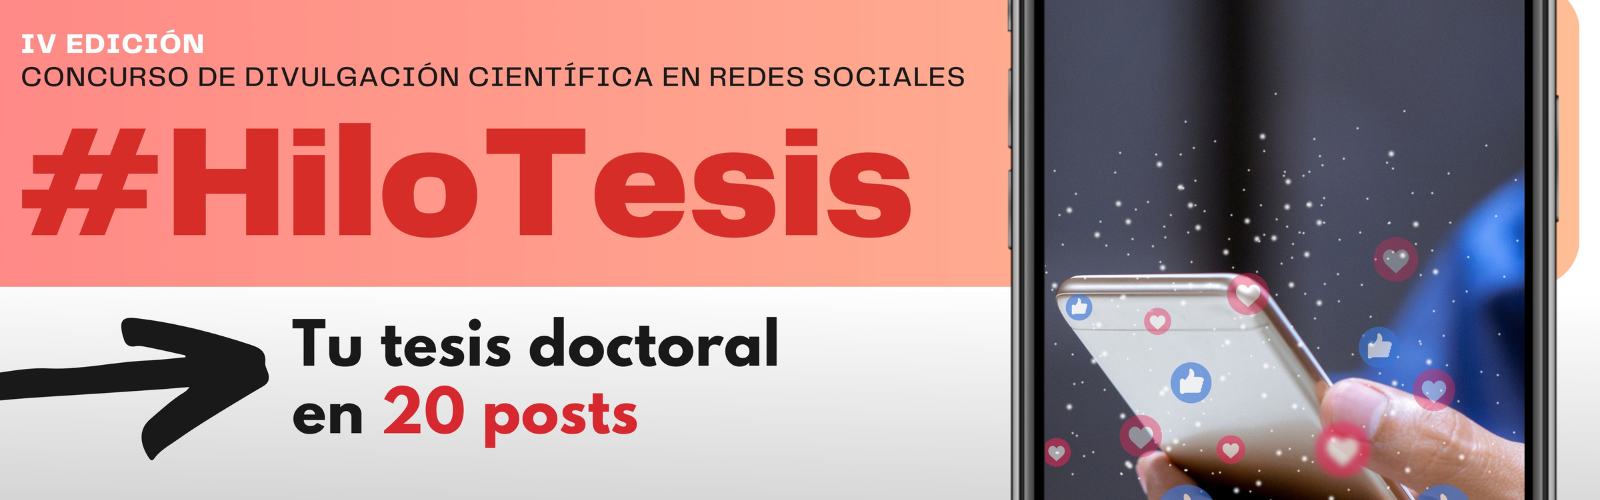 Llega la cuarta edición del concurso "#HiloTesis: Tu tesis doctoral en redes sociales"